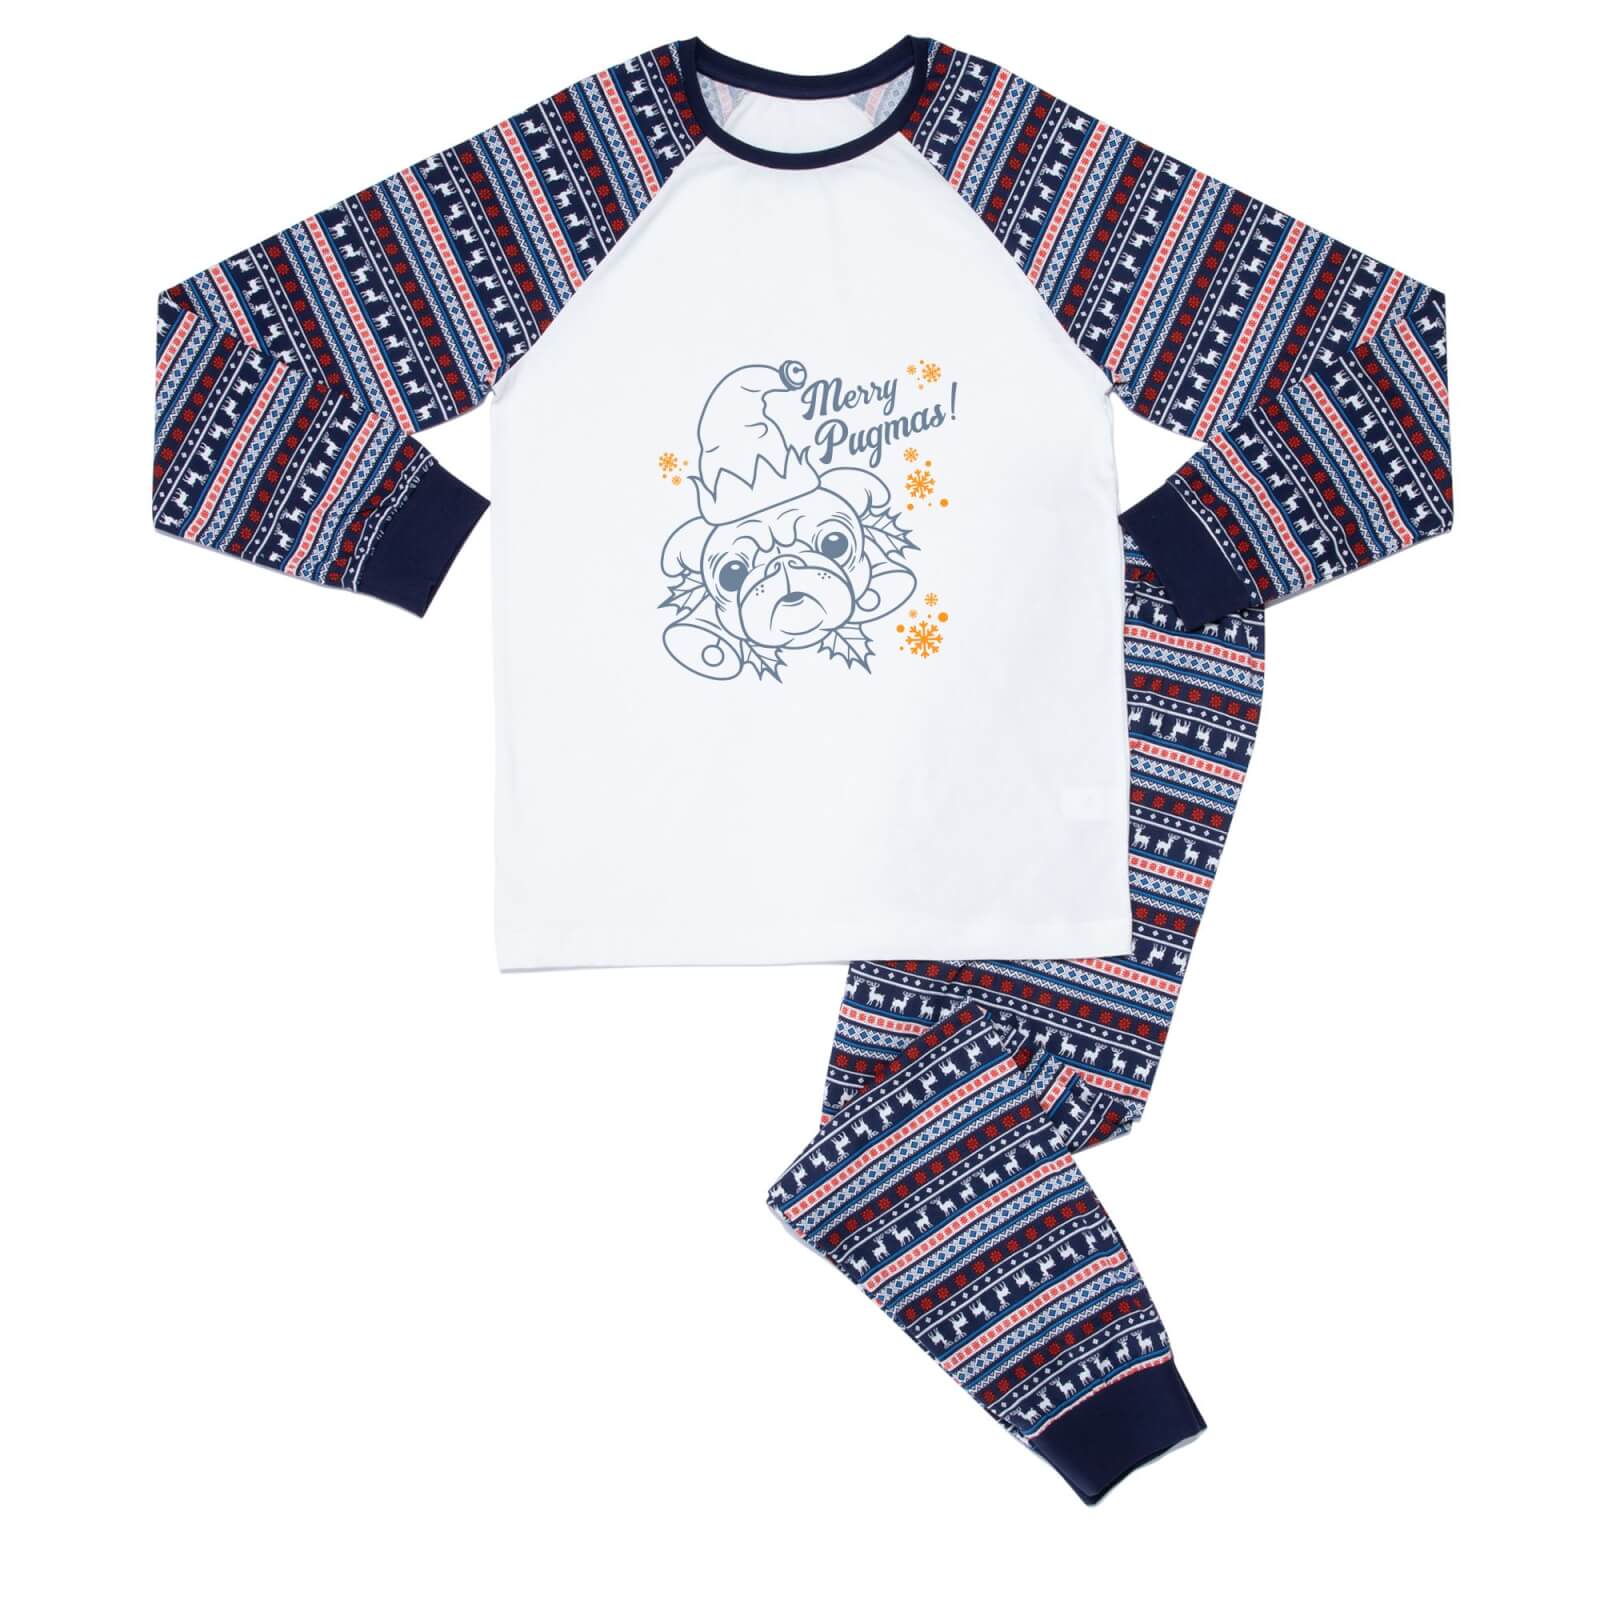 Merry Pugmas Dog Lover Unisex Pyjama Set - Blue White Pattern - XS - Blue White Pattern